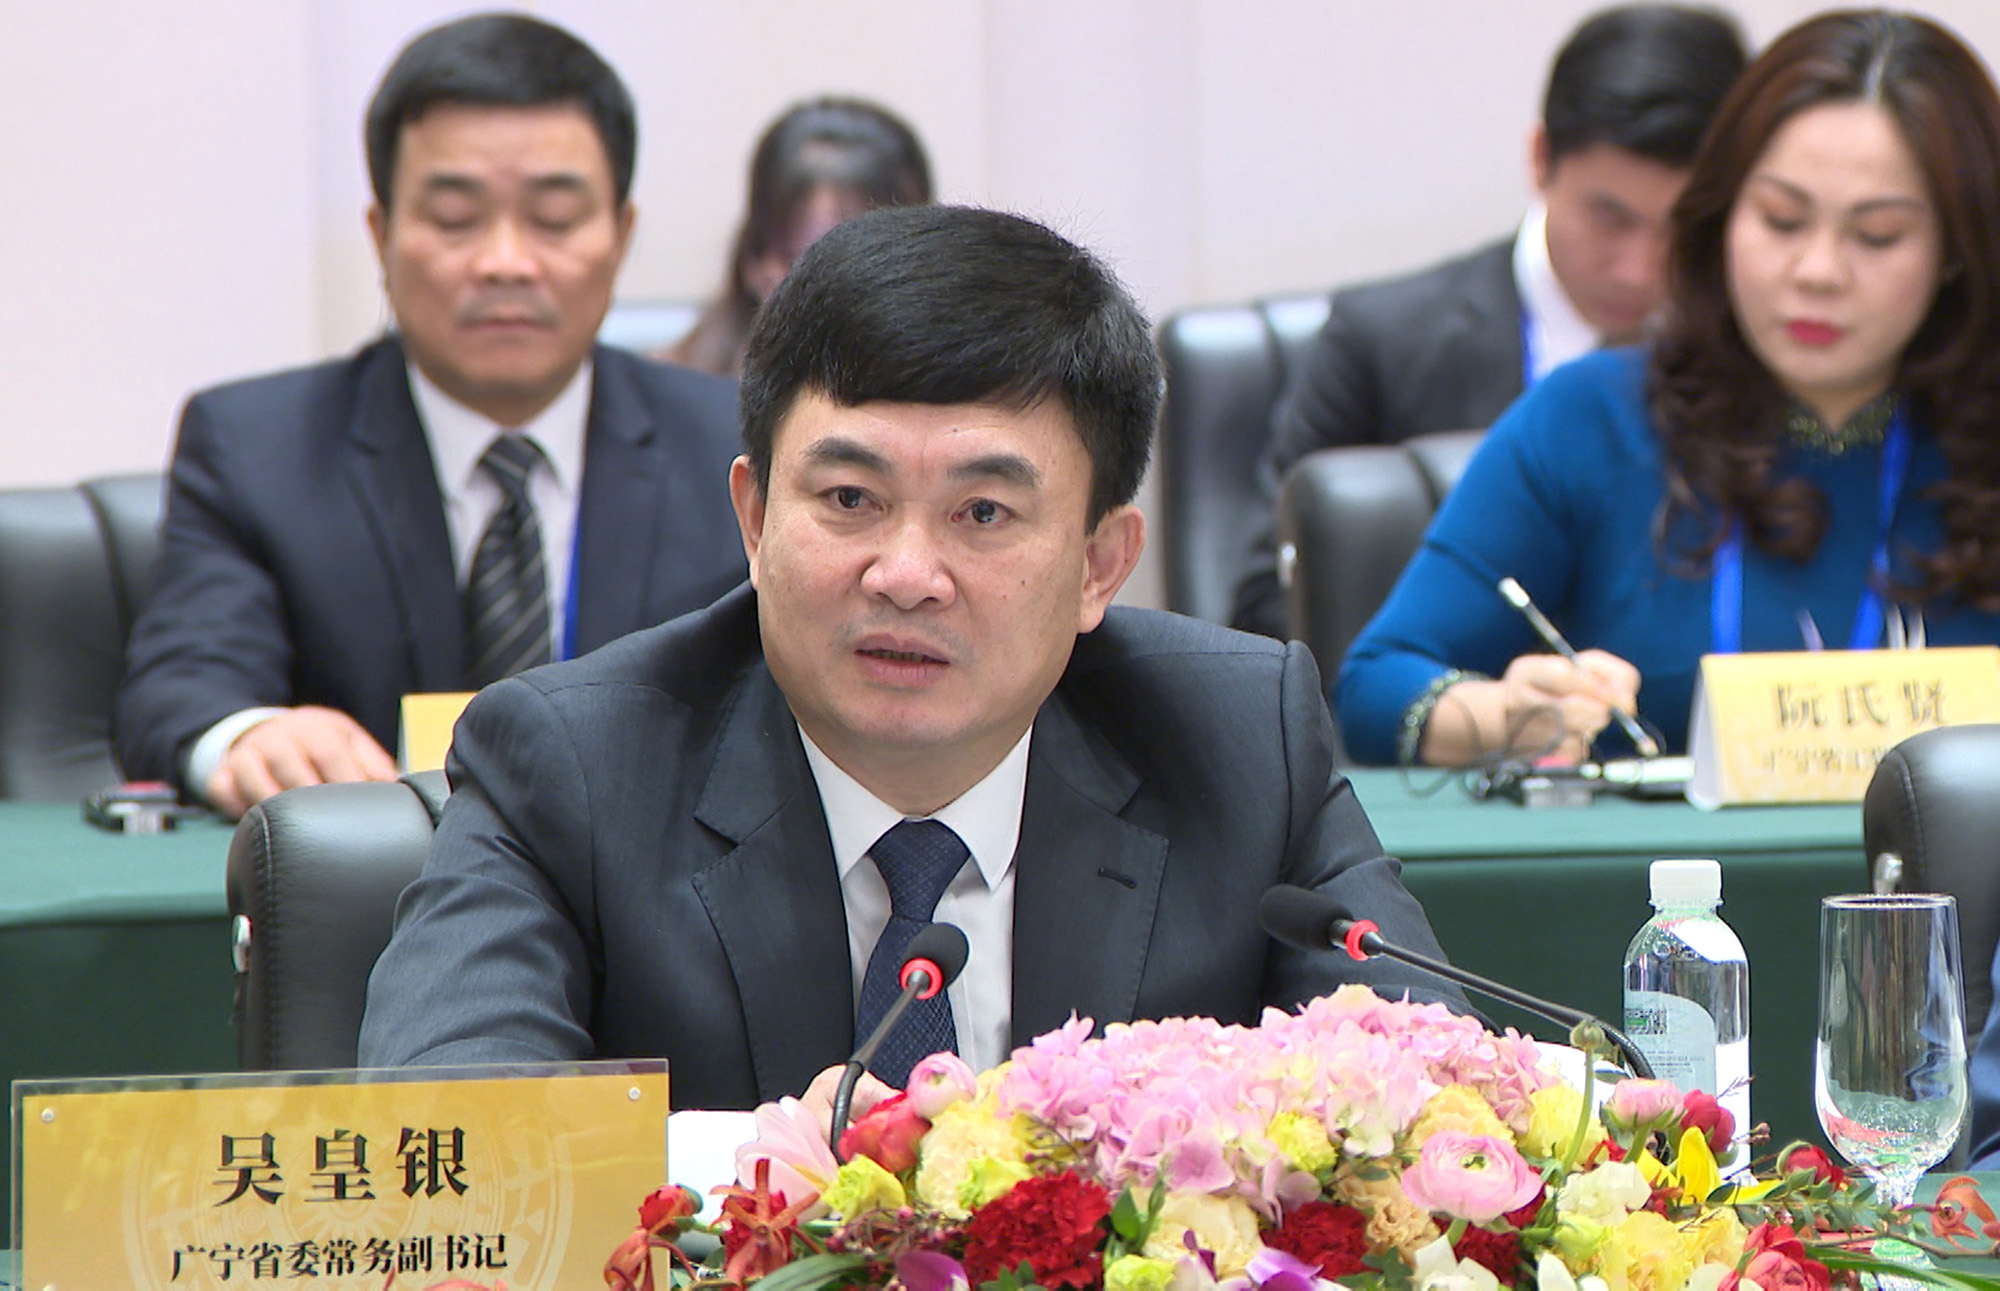 Đồng chí Ngô Hoàng Ngân, Phó Bí thư Thường trực Tỉnh ủy Quảng Ninh, phát biểu tại buổi tiếp xã giao.